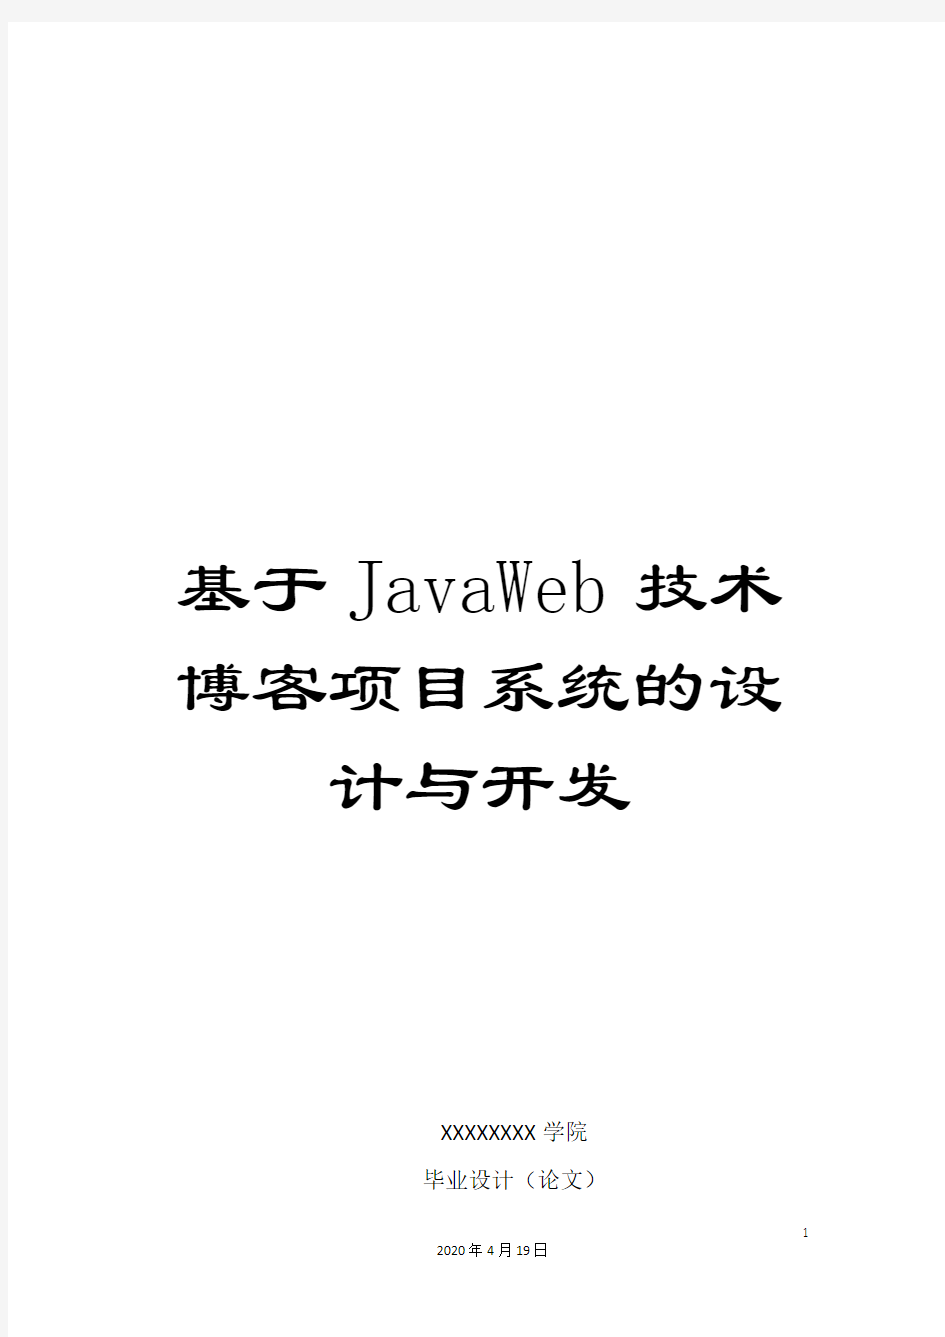 基于JavaWeb技术博客项目系统的设计与开发